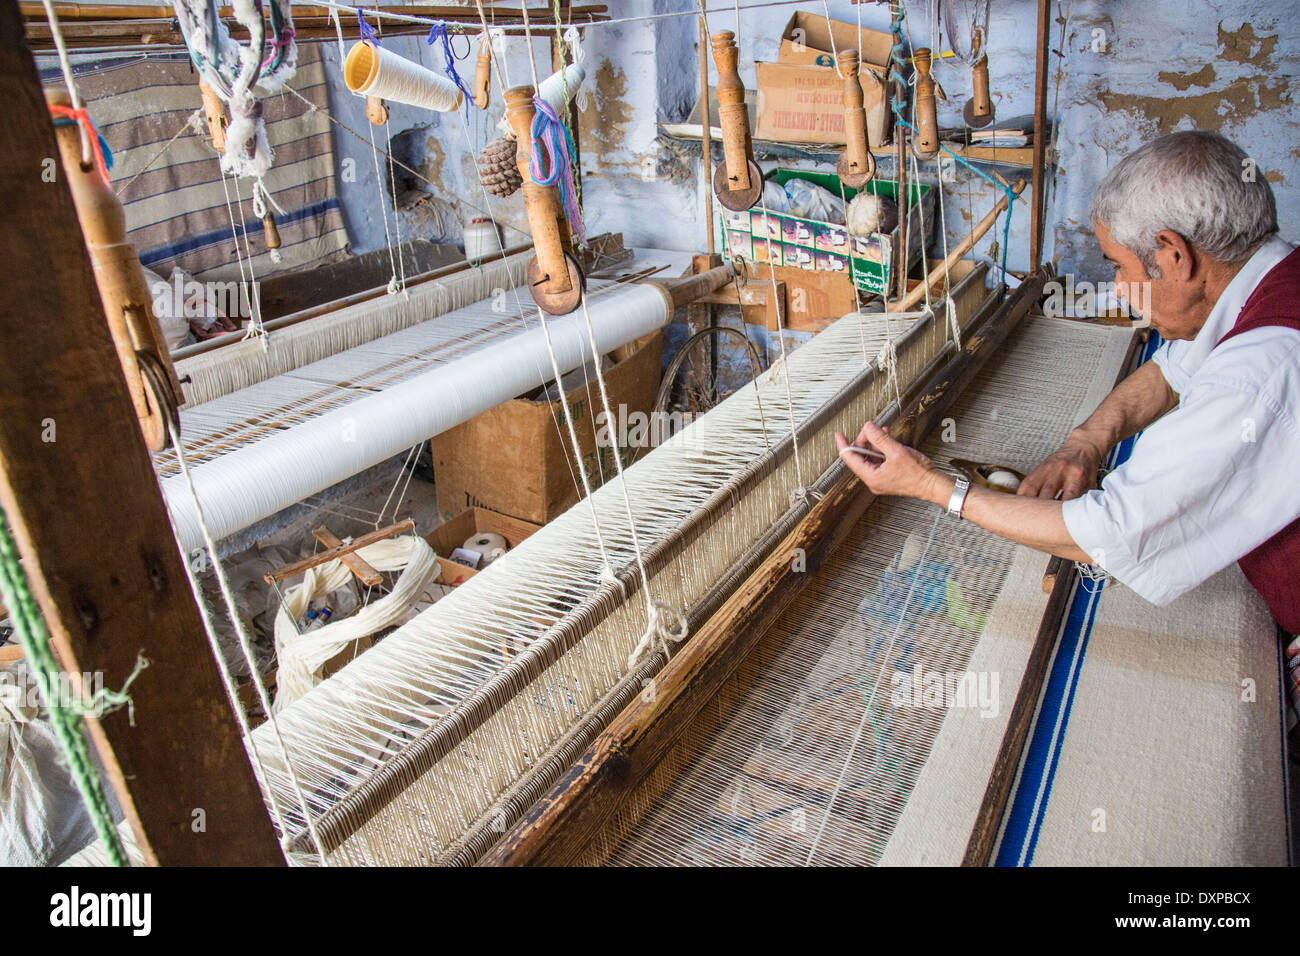 Fabrication de textiles à Kairouan, Tunisie Banque D'Images